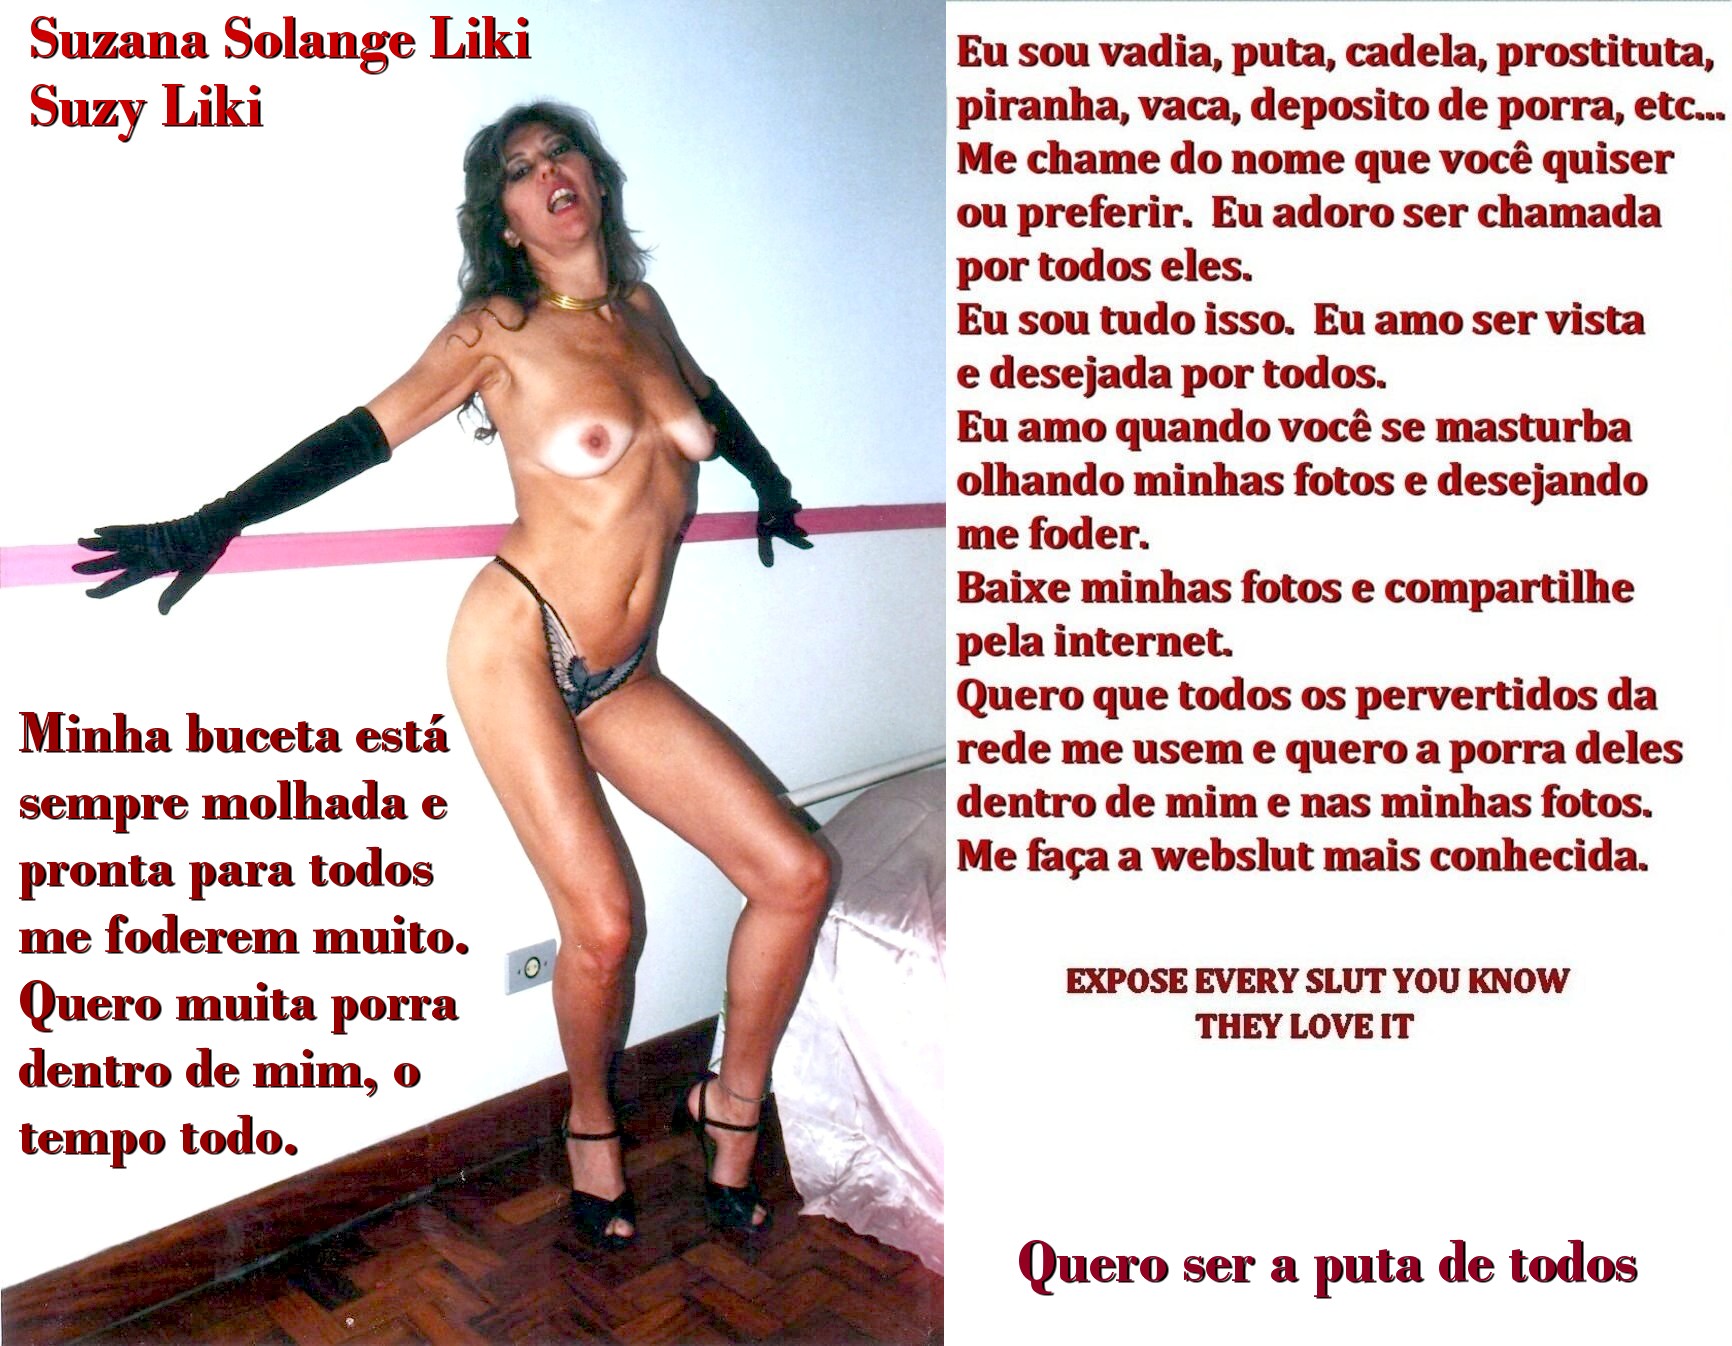 SUZY LIKI - BRAZILIAN SEX WORKER